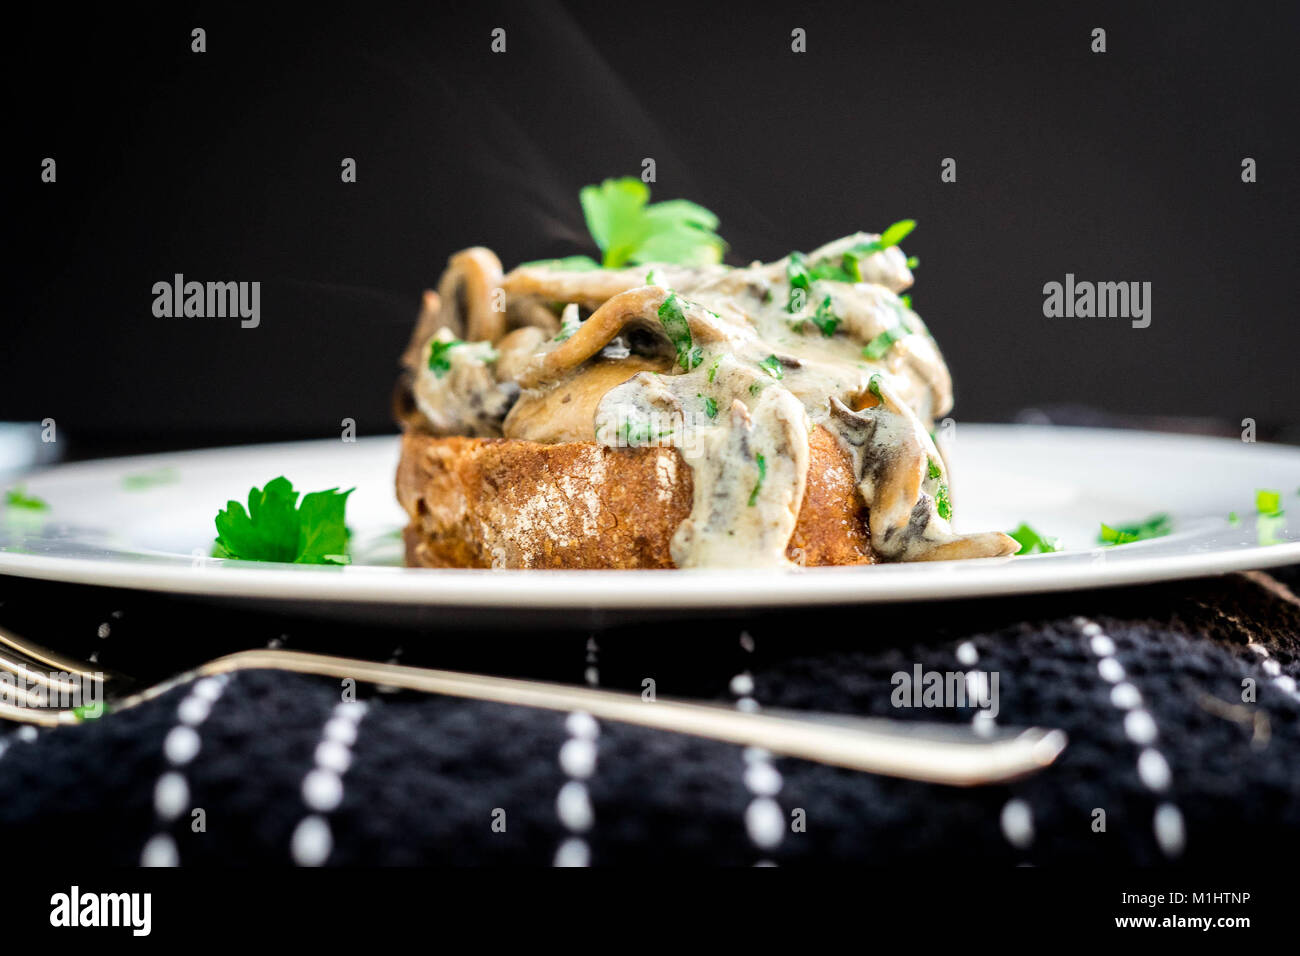 Una sana cremosa di funghi su toast. utilizzando crème fraiche al posto della panna come una alternativa sana Foto Stock